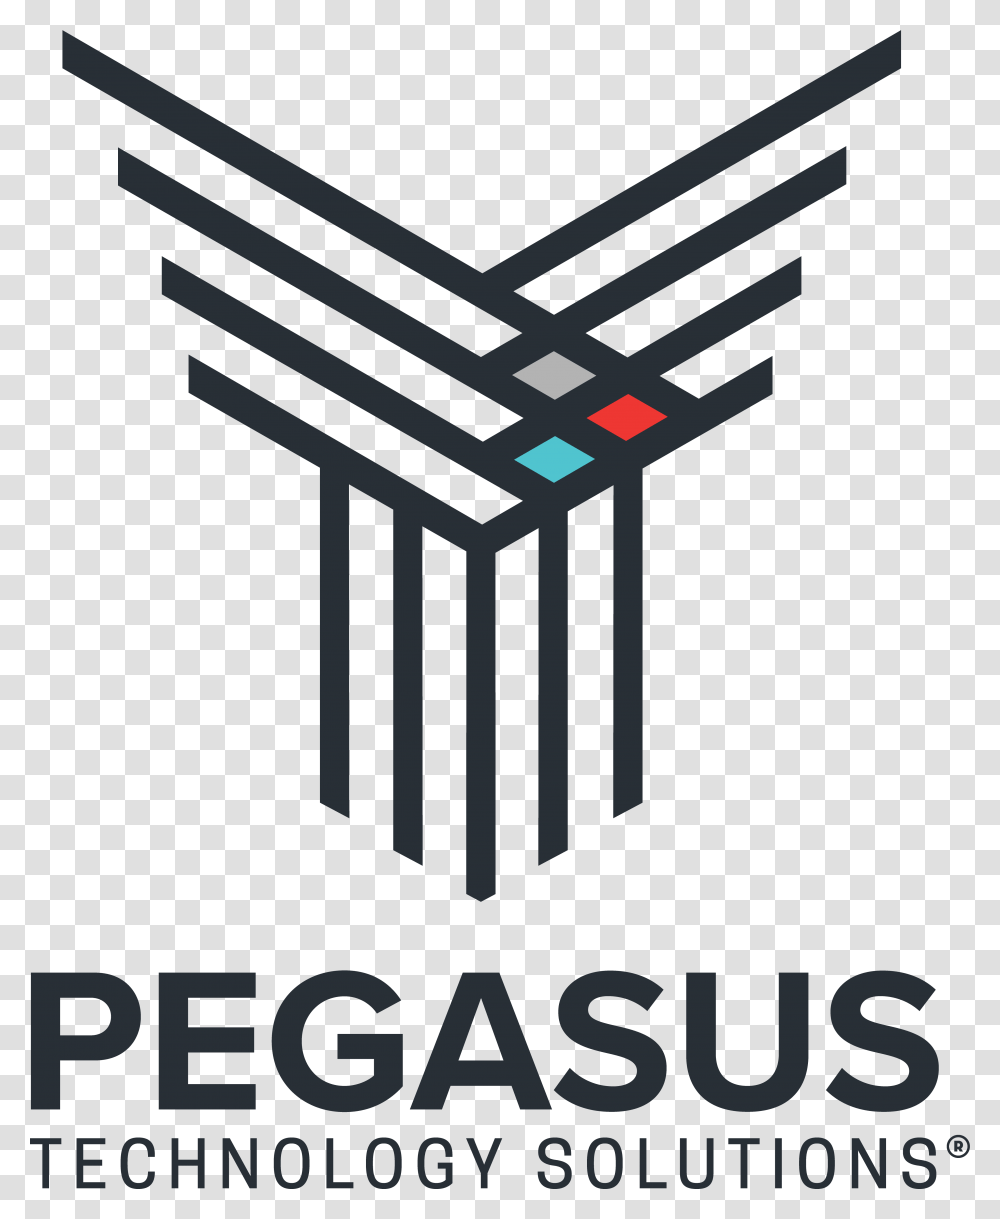 Logo Pegasus Vertical People's Insurance Plc Logo, Building, Architecture, Cross Transparent Png